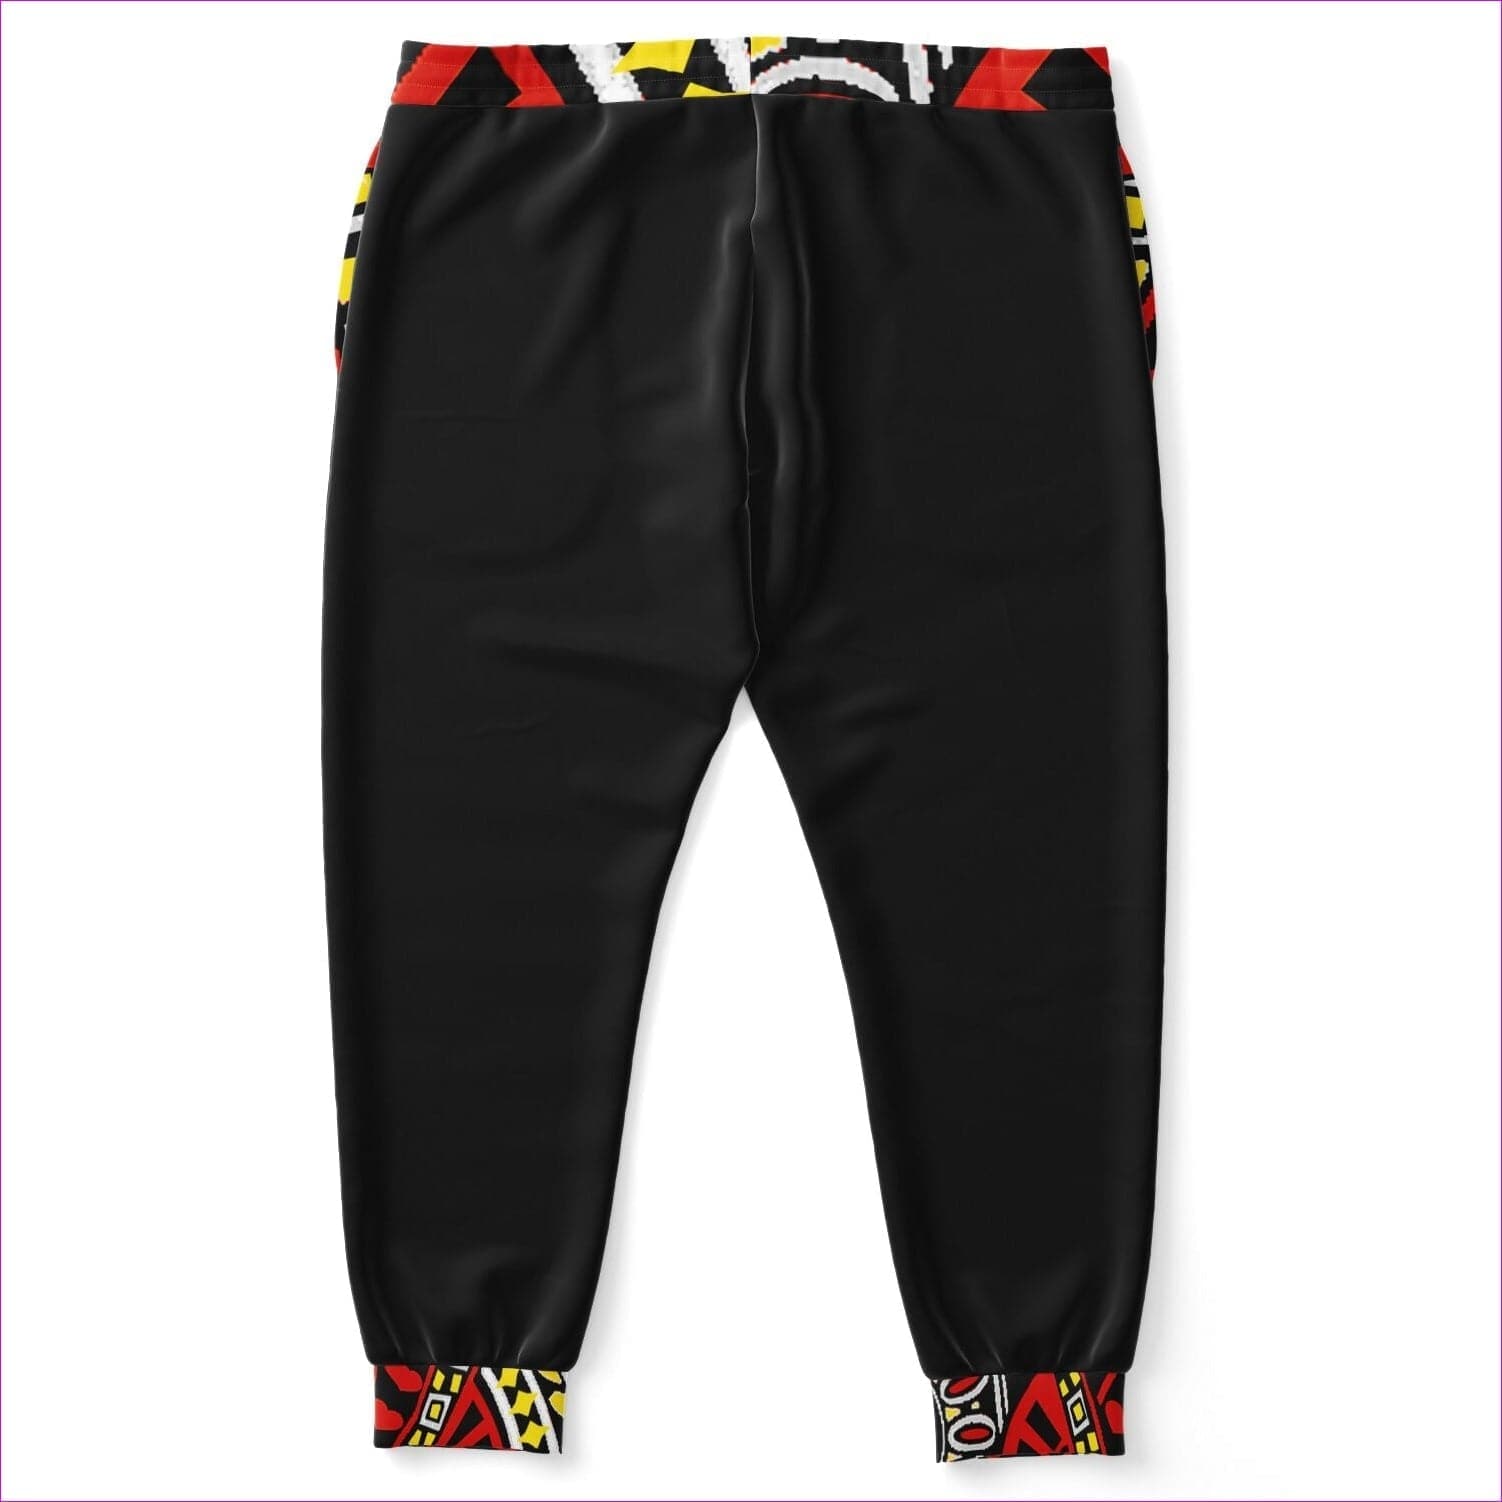 - Jack Of All Trades Men's Jogging Pants Voluptuous (+) Plus Size - Fashion Plus-size Jogger - AOP at TFC&H Co.